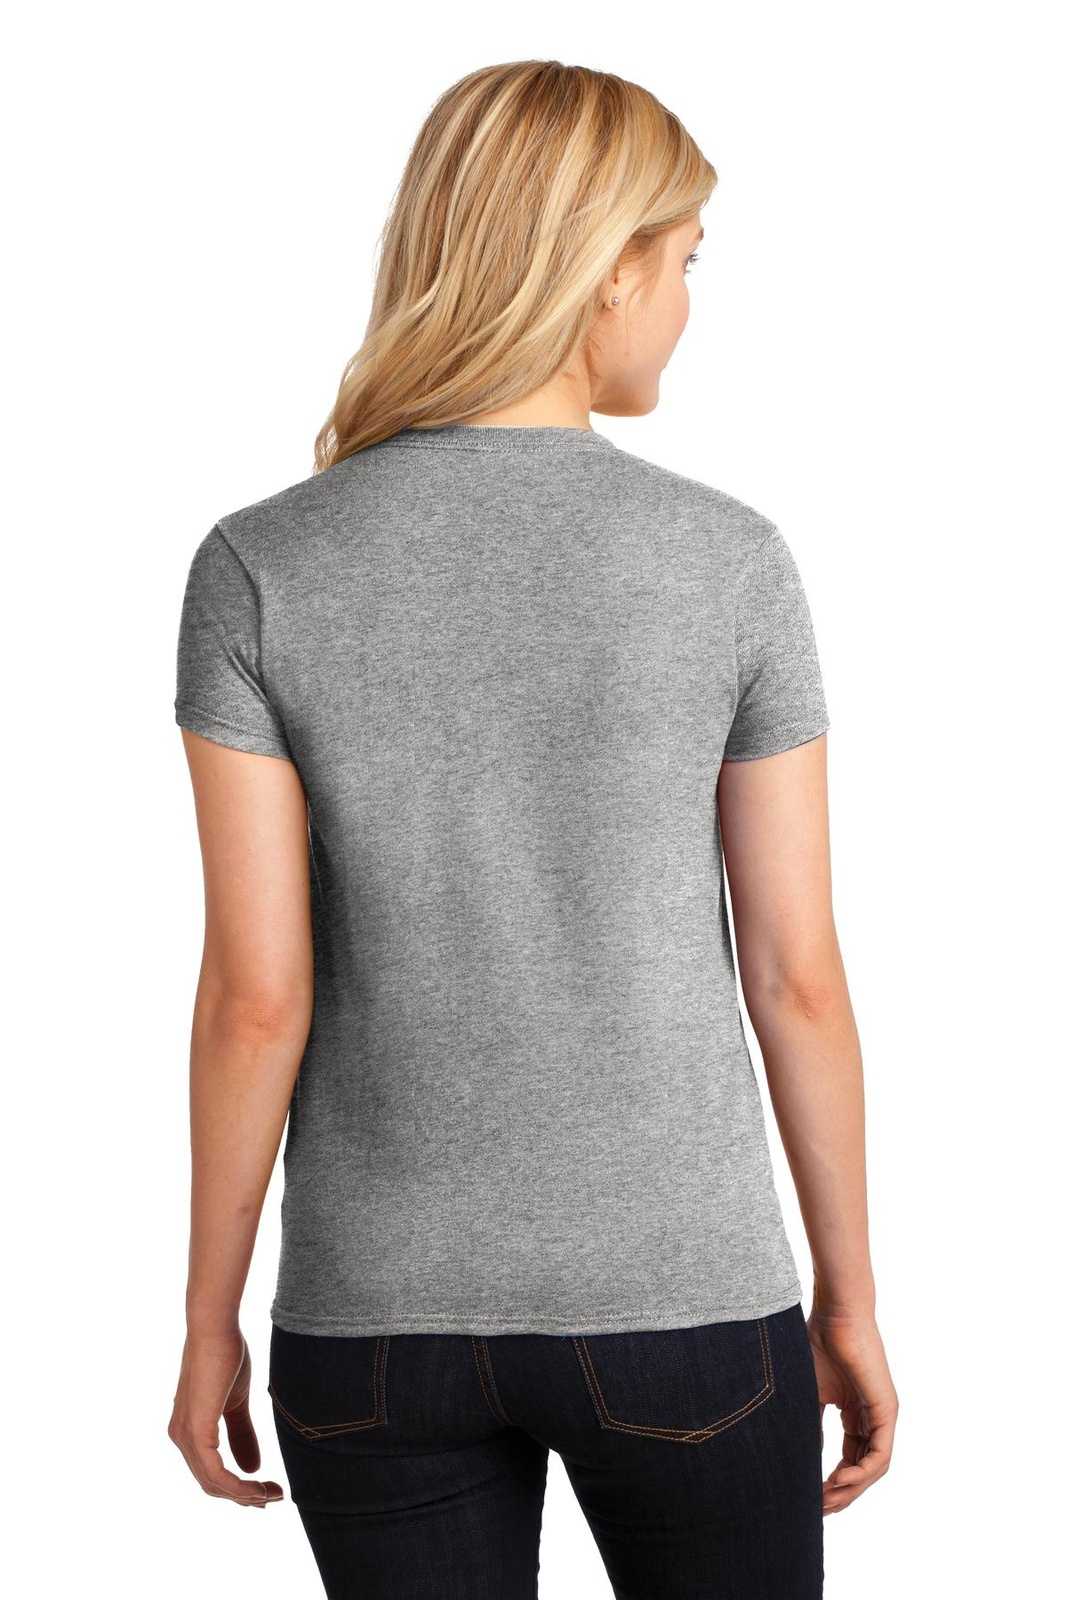 Gildan 5000L Ladies Heavy Cotton 100% Cotton T-Shirt - Sport Gray - HIT a Double